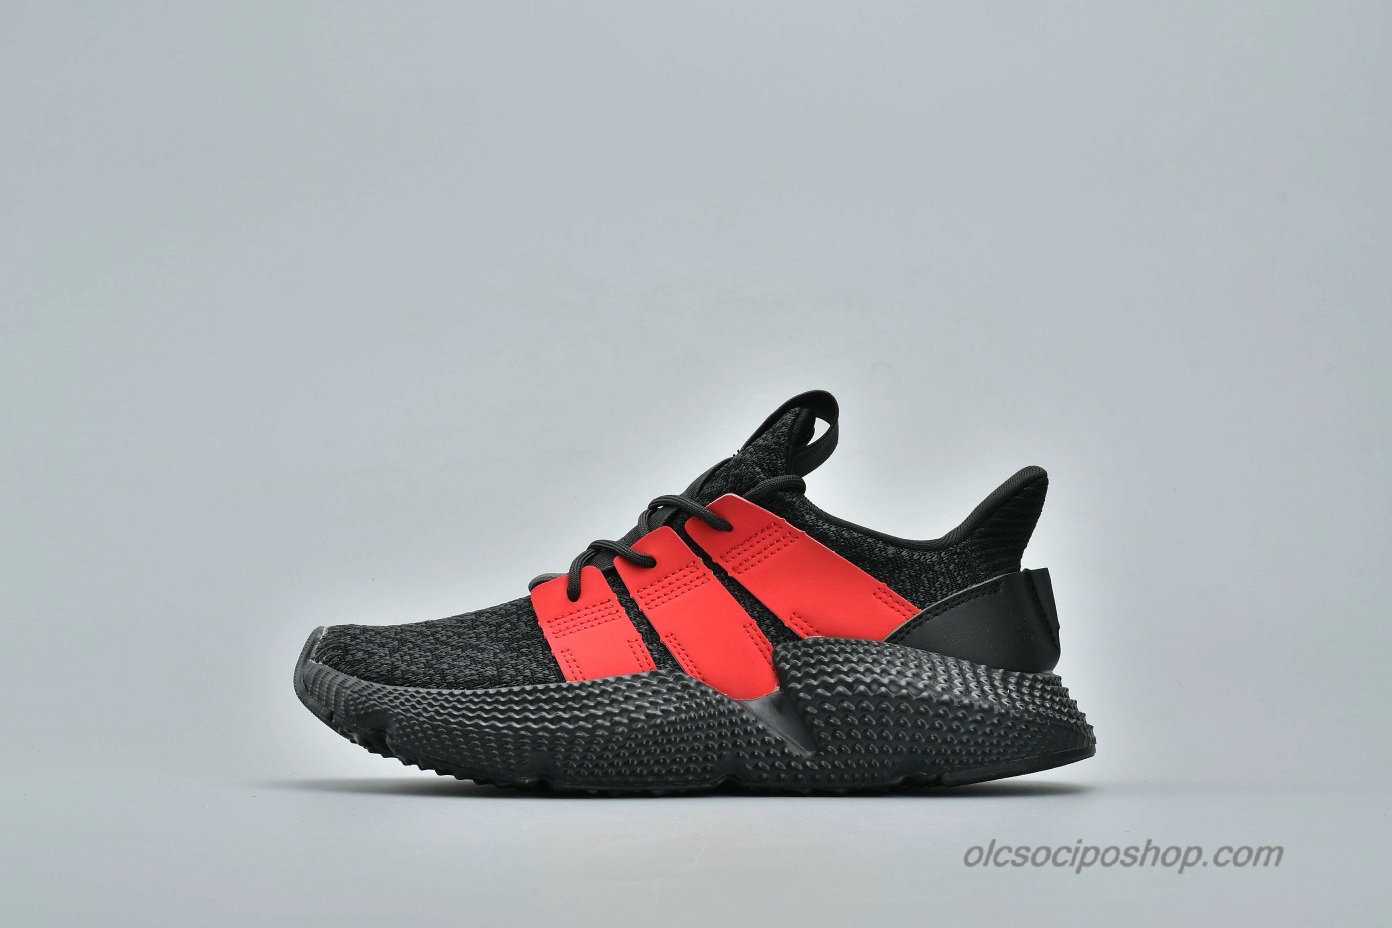 Adidas Prophere Undftd Fekete/Piros Cipők (BB6994) - Kattintásra bezárul